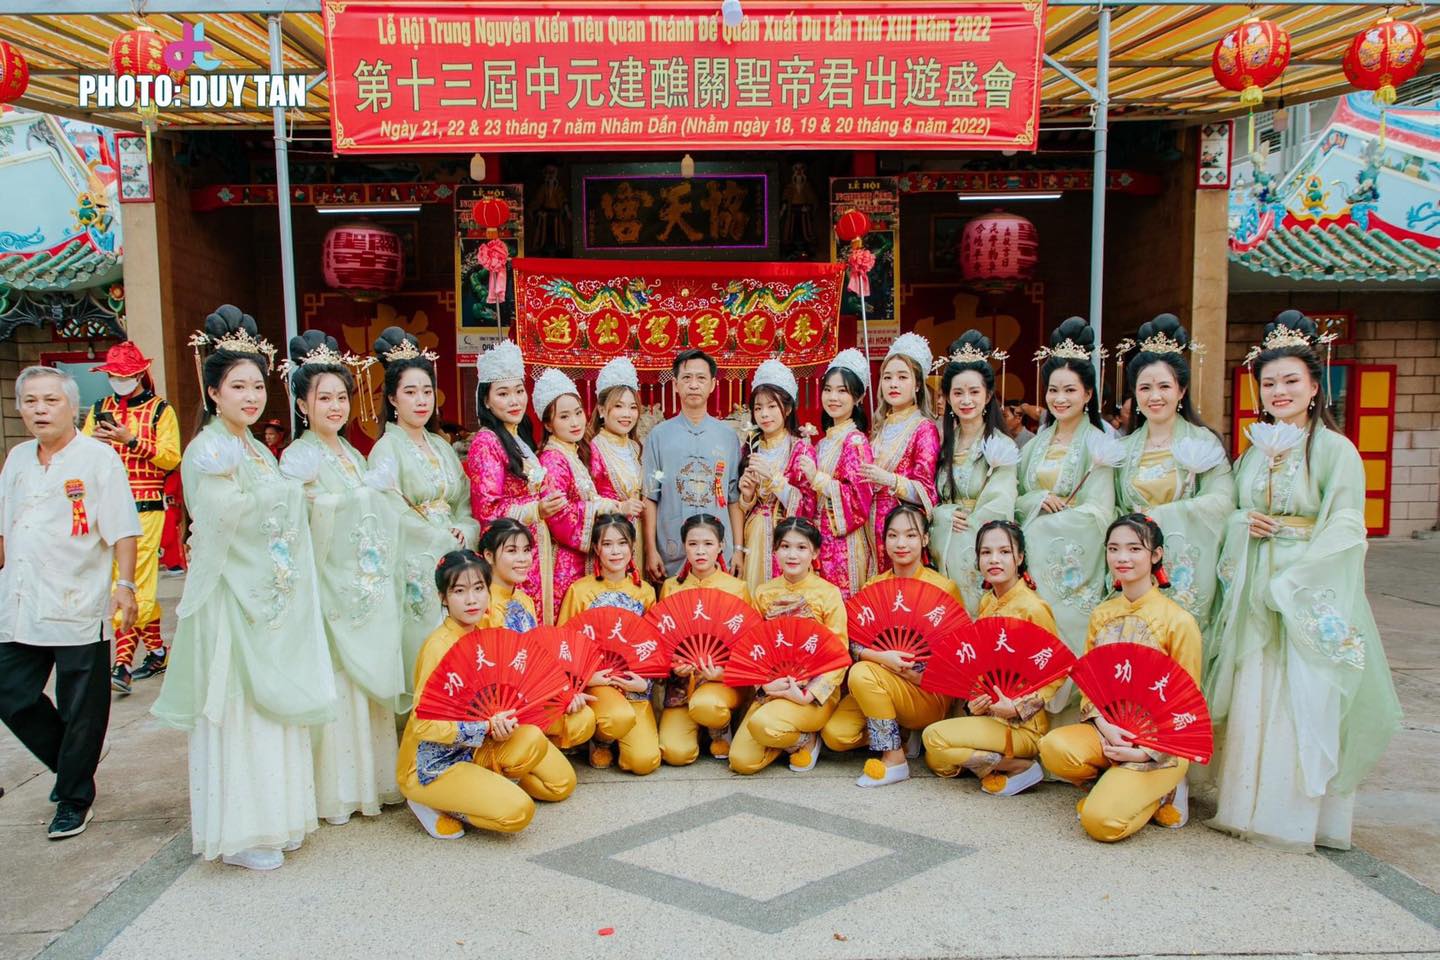 Trong ngày lễ hội, các nam thanh nữ tú sẽ hóa trang thành nhiều nhân vật trong sử thi Trung Hoa